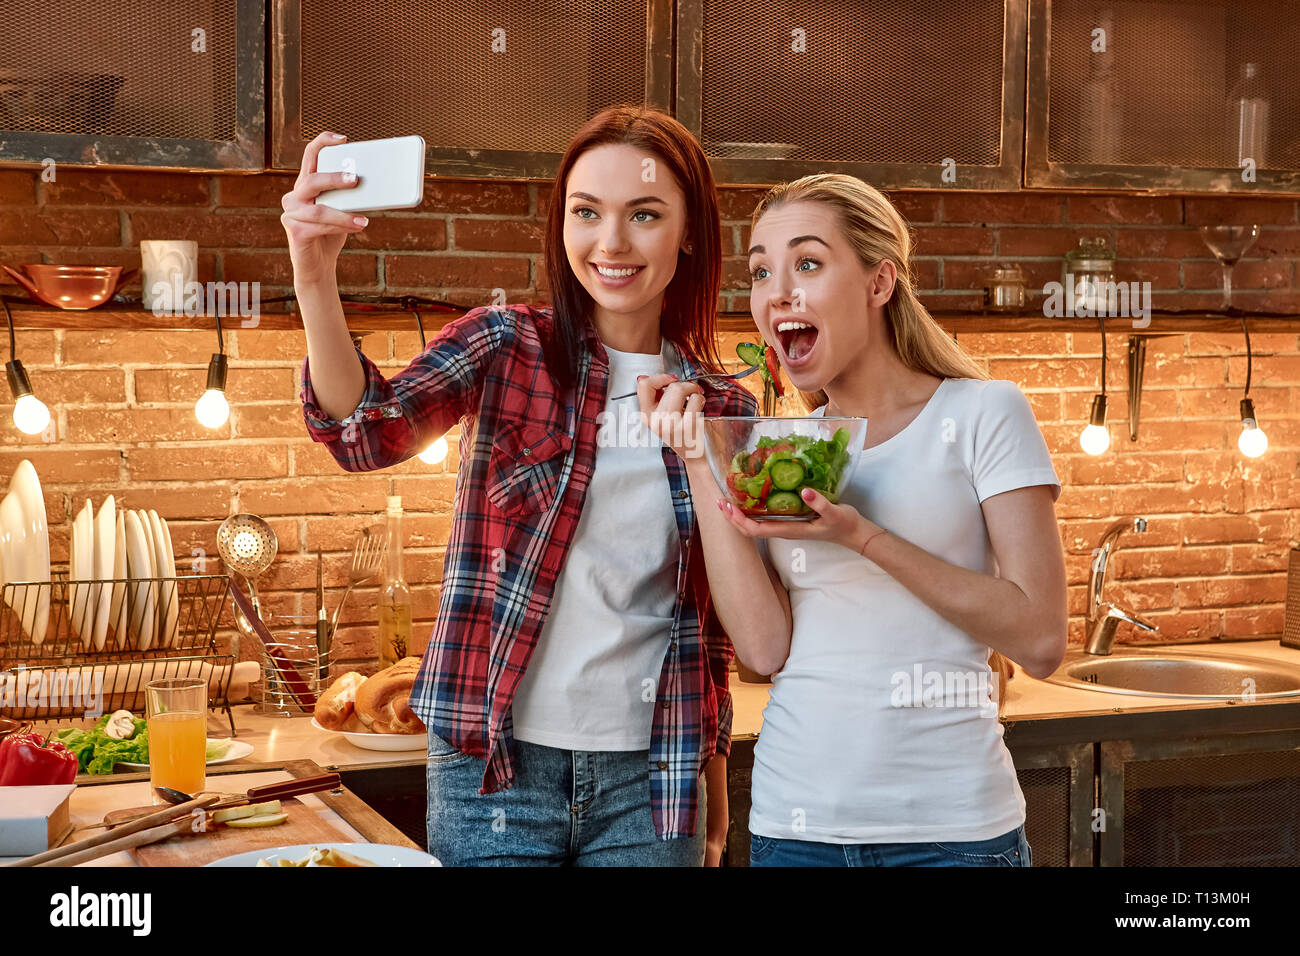 Porträt von zwei fröhlichen Frauen, Spaß haben, während der Vorbereitung Gemüse Salat. Dunkelhaarige Mädchen mit kariertem Hemd nimmt selfie, während ihre blonde Freundin im weißen T-Shirt einem gekochten Salat hält und posiert für ein Foto Stockfoto